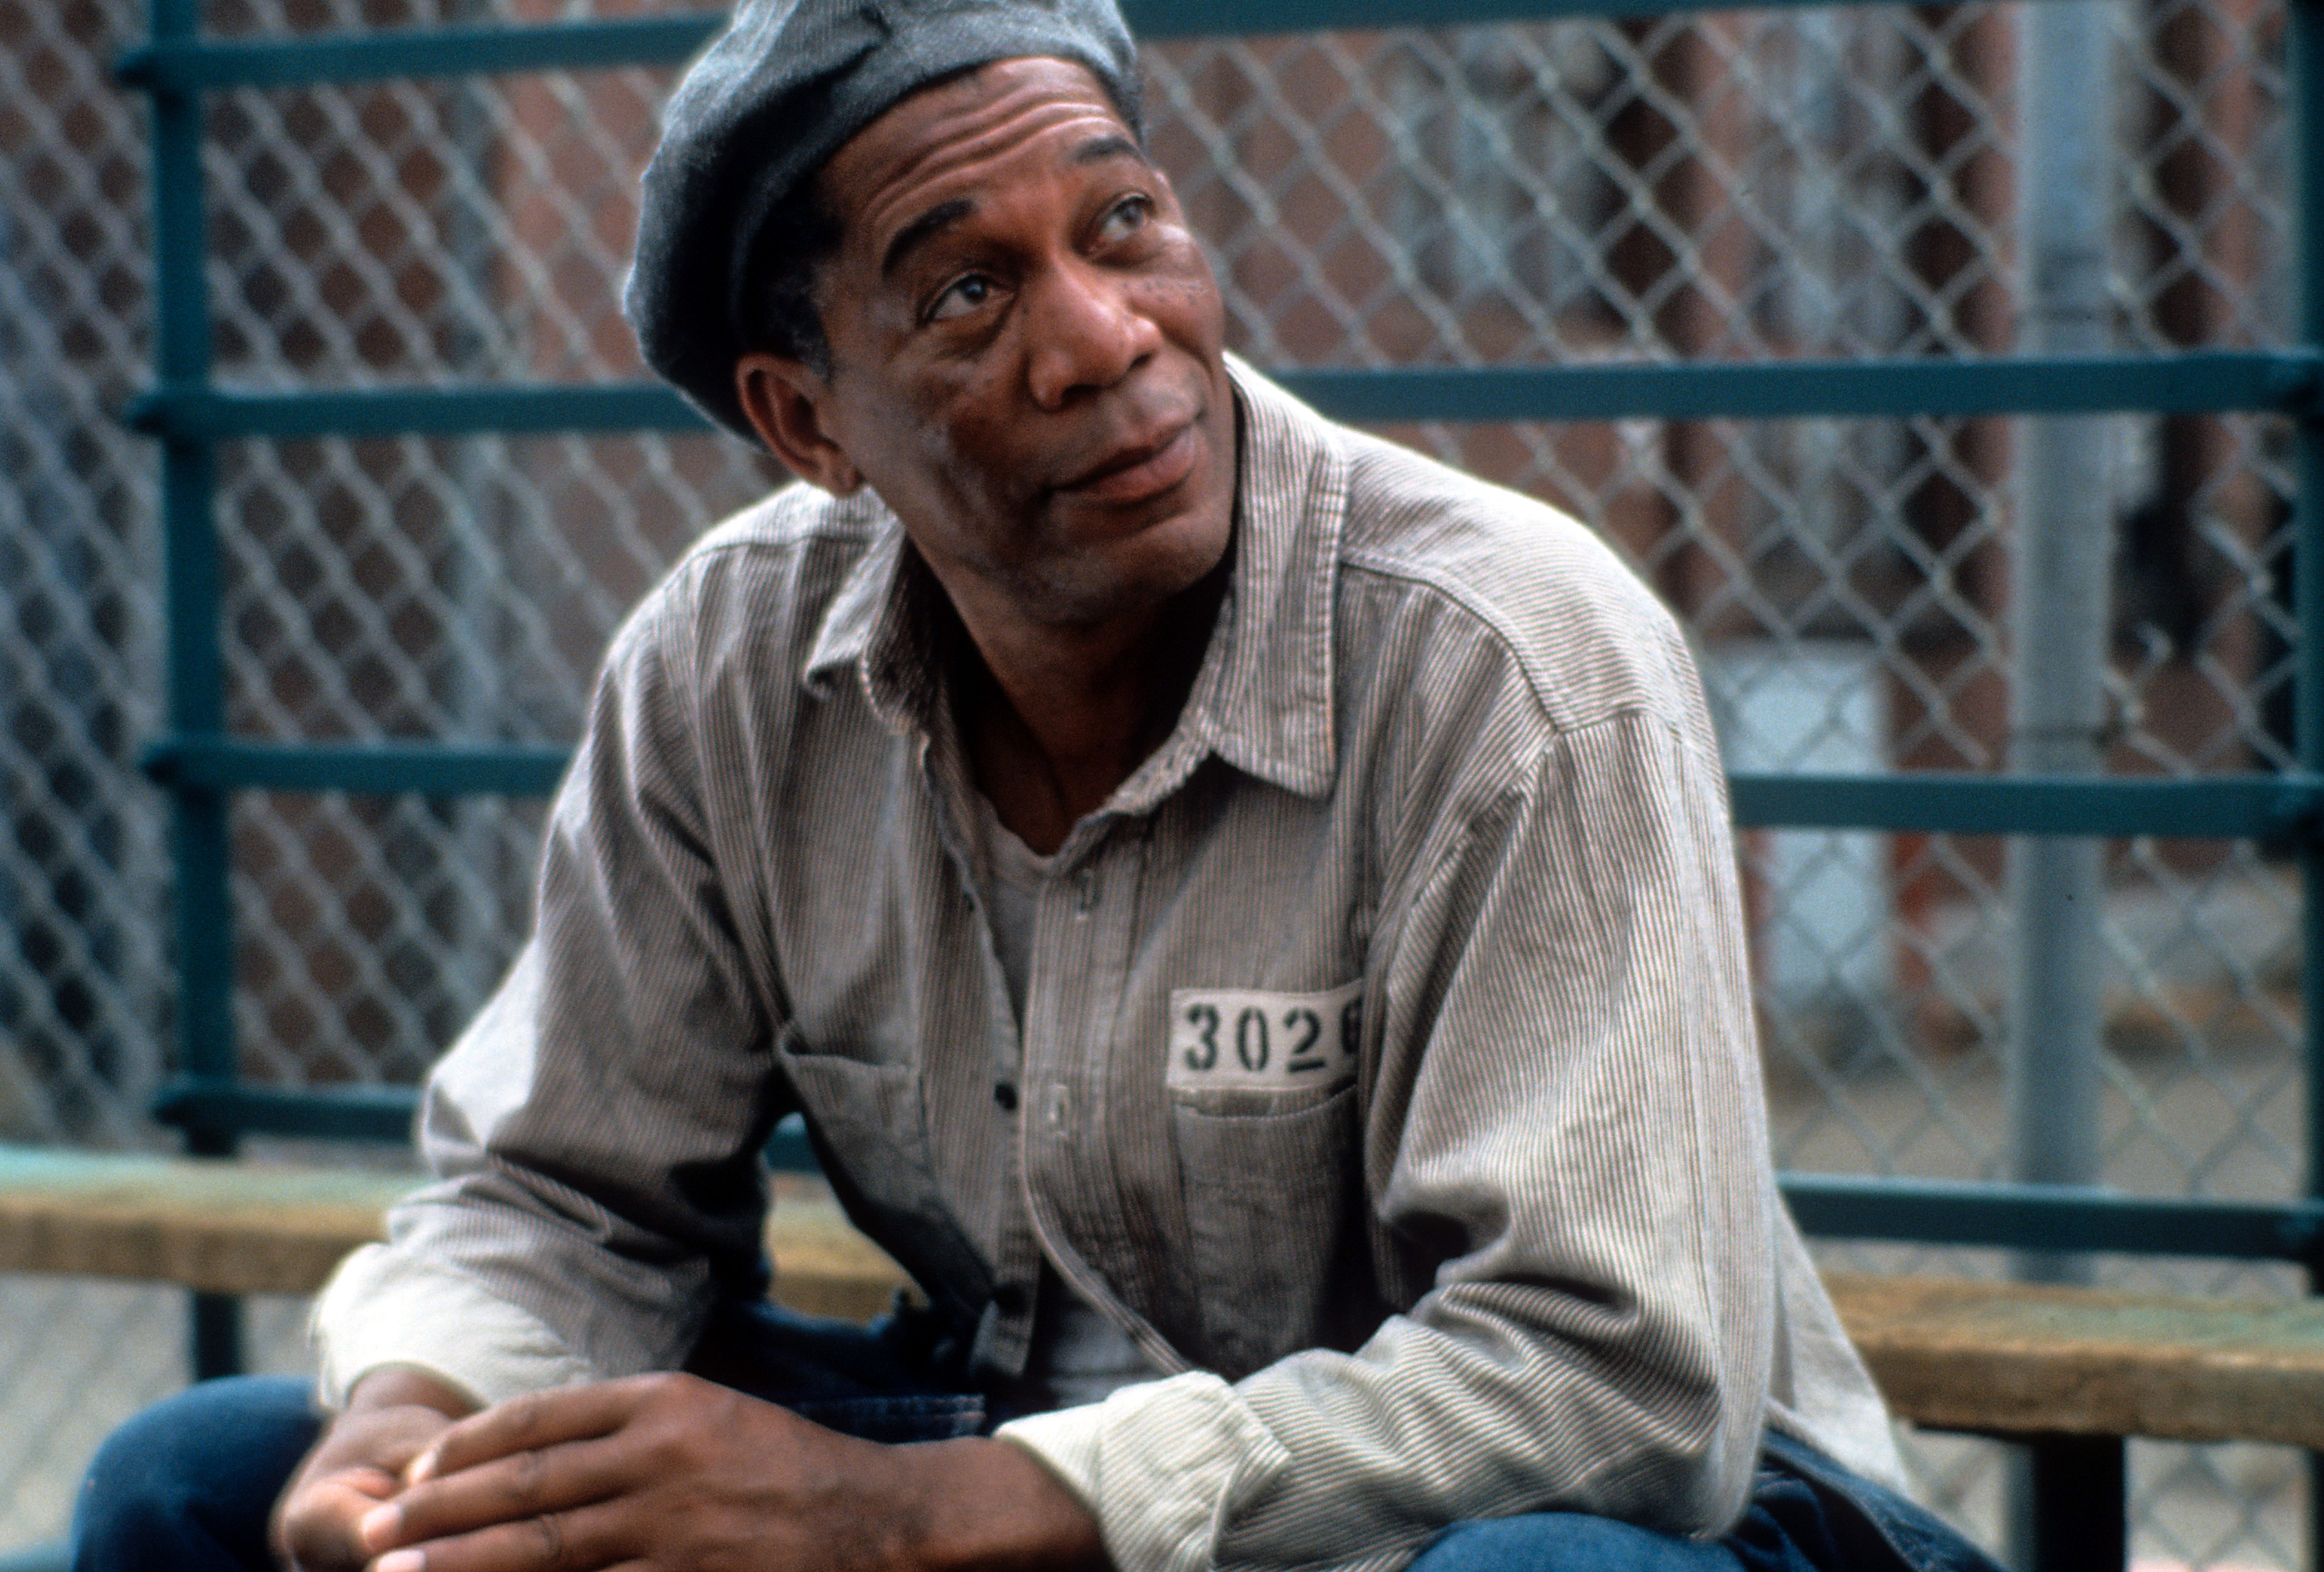 Morgan Freeman in "The Shawshank Redemption" im Jahr 1994 | Quelle: Getty Images